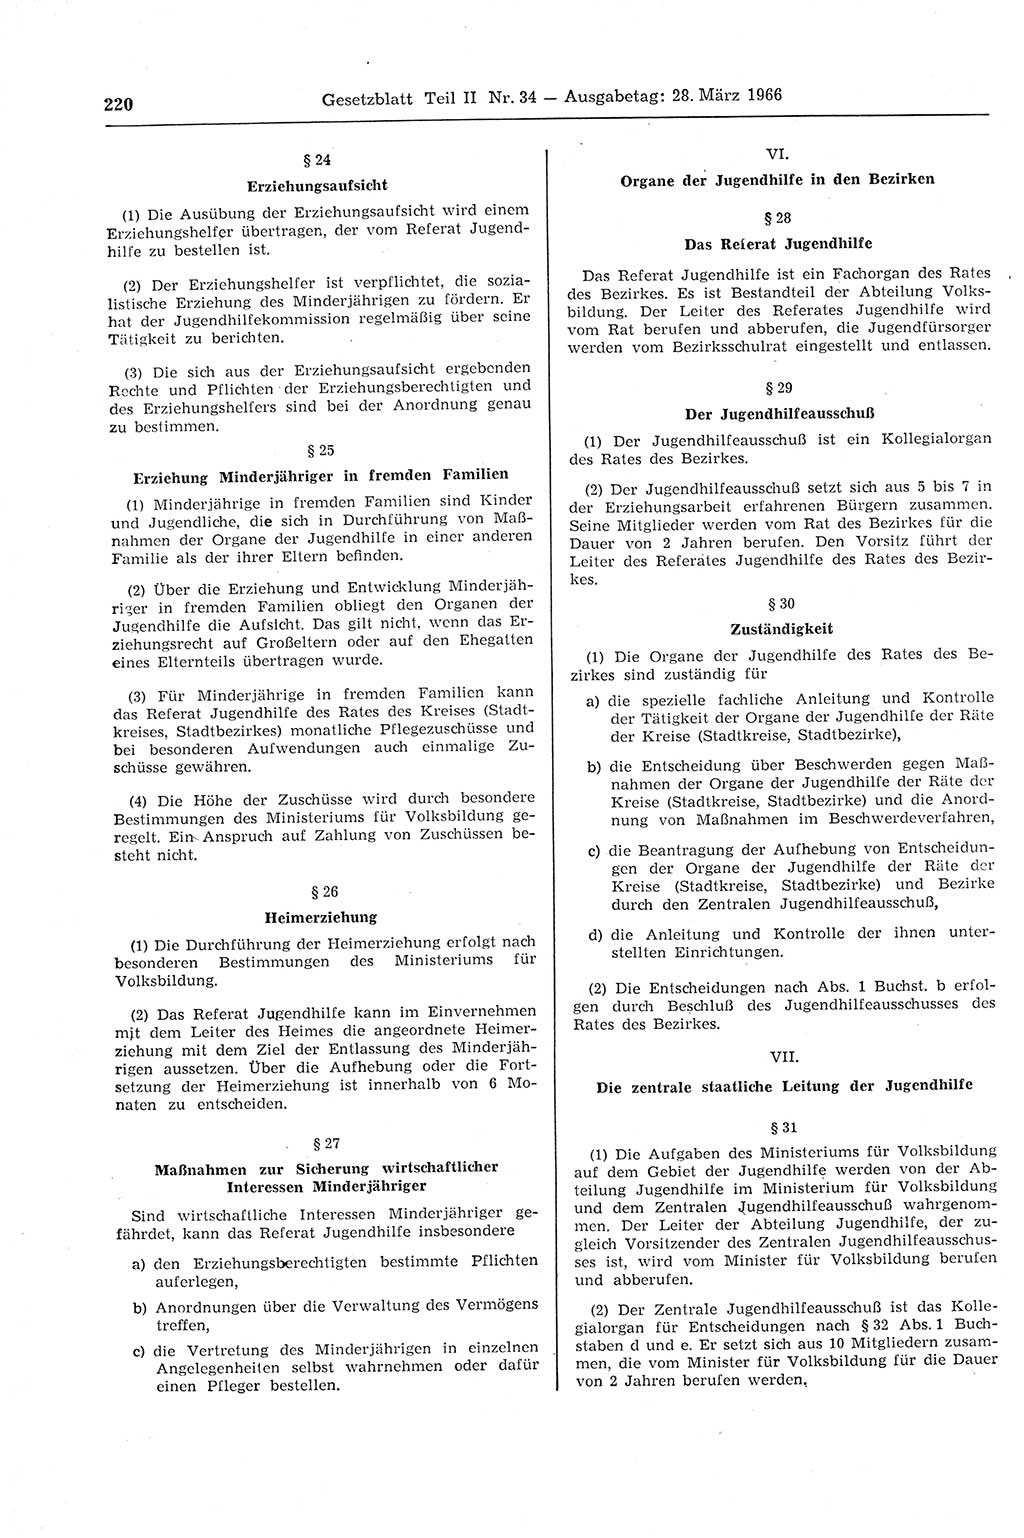 Gesetzblatt (GBl.) der Deutschen Demokratischen Republik (DDR) Teil ⅠⅠ 1966, Seite 220 (GBl. DDR ⅠⅠ 1966, S. 220)